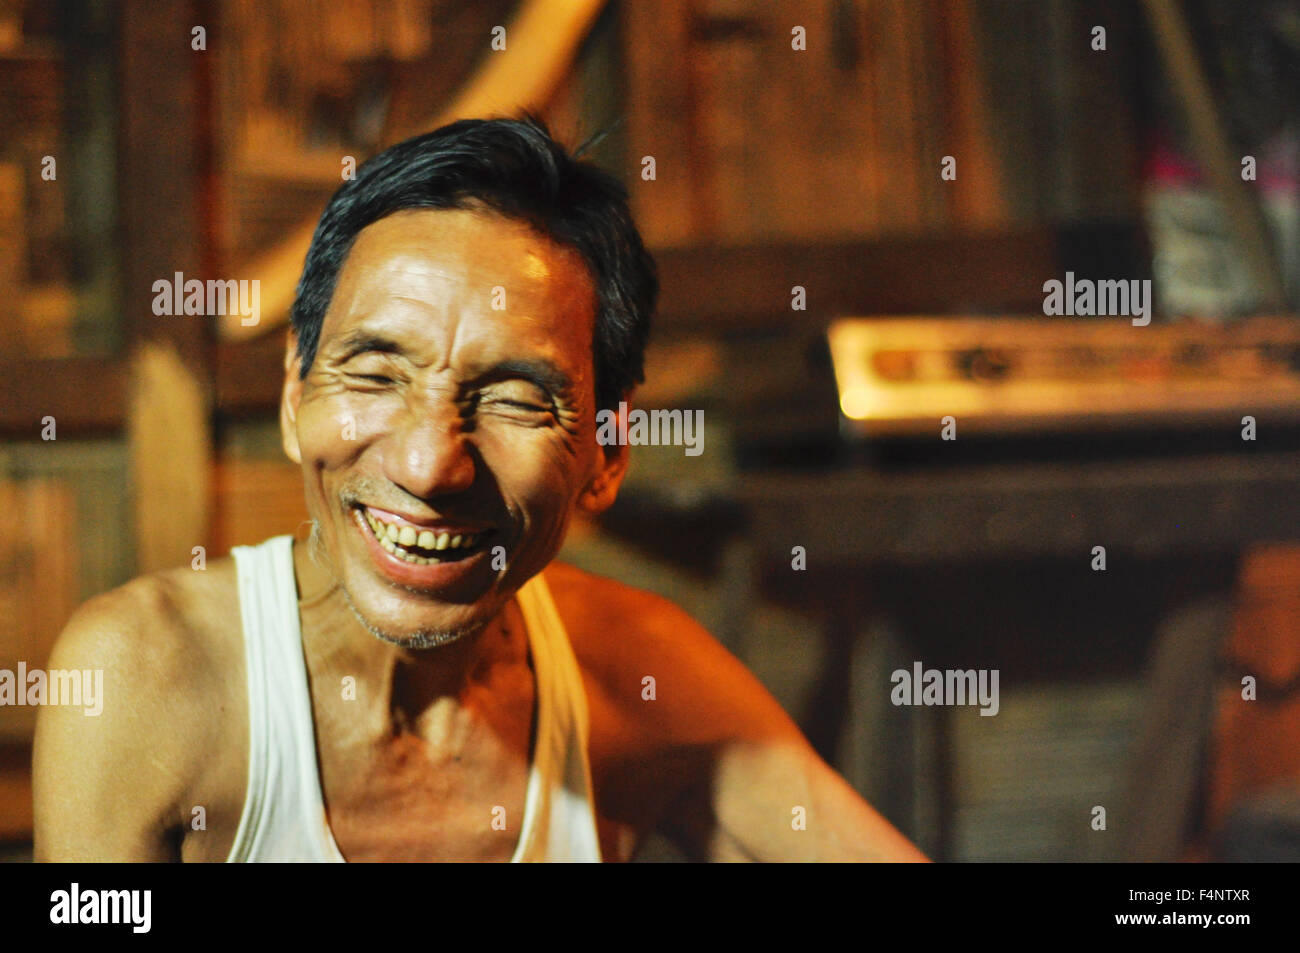 Le Nagaland, Inde - Mars 2012 : travailleur non identifiés laughes au Nagaland, région reculée de l'Inde. Rédaction documentaire. Banque D'Images